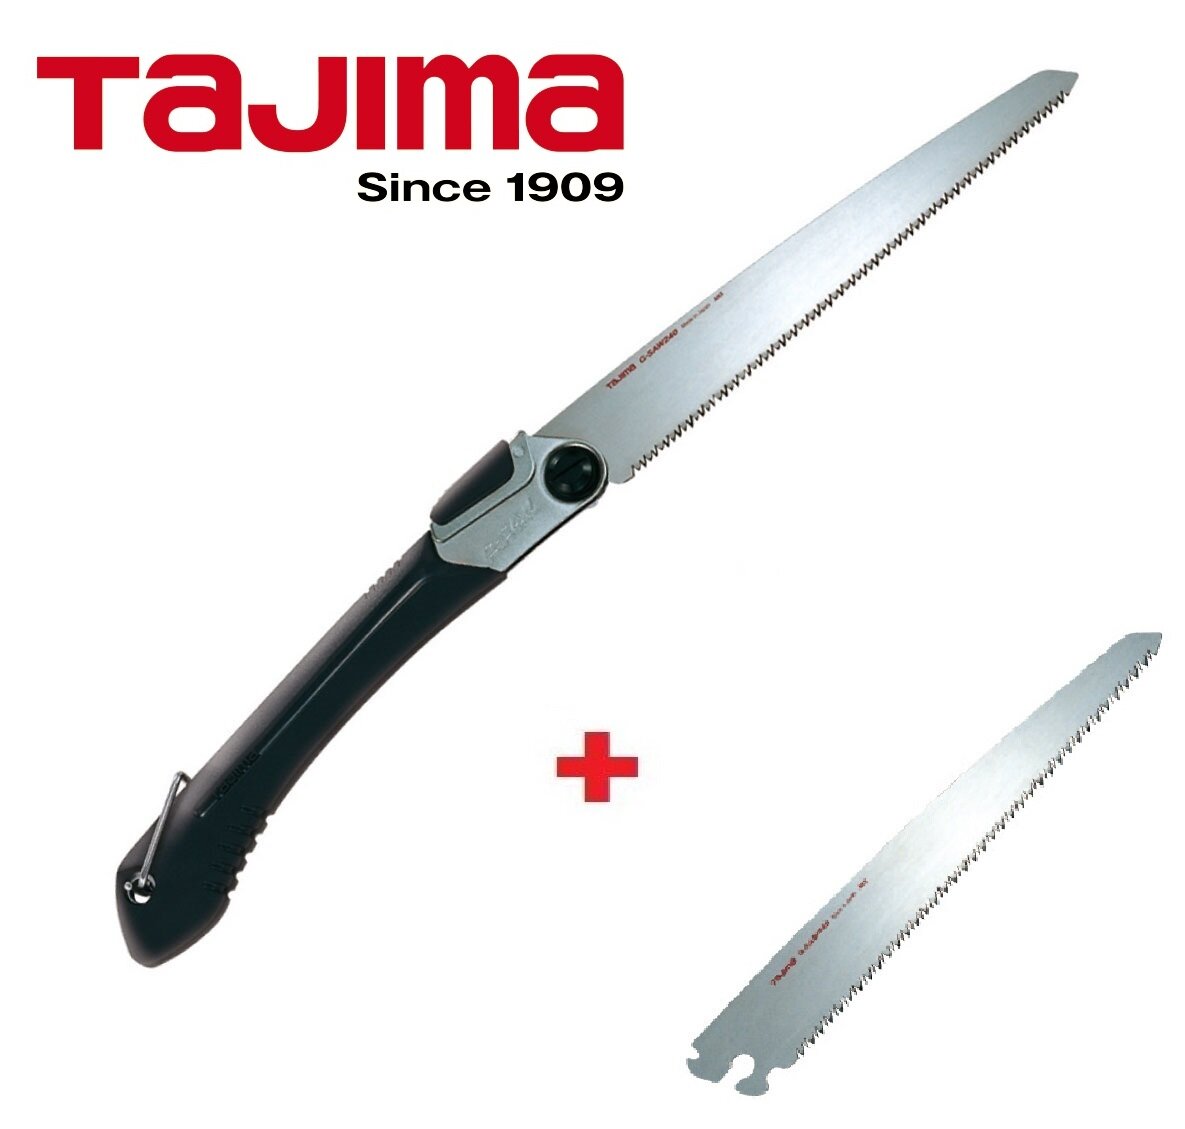 Ножовка складная TAJIMA Rapid-Pull G-Saw GK-G240 (240мм) + запасное полотно GKBG240